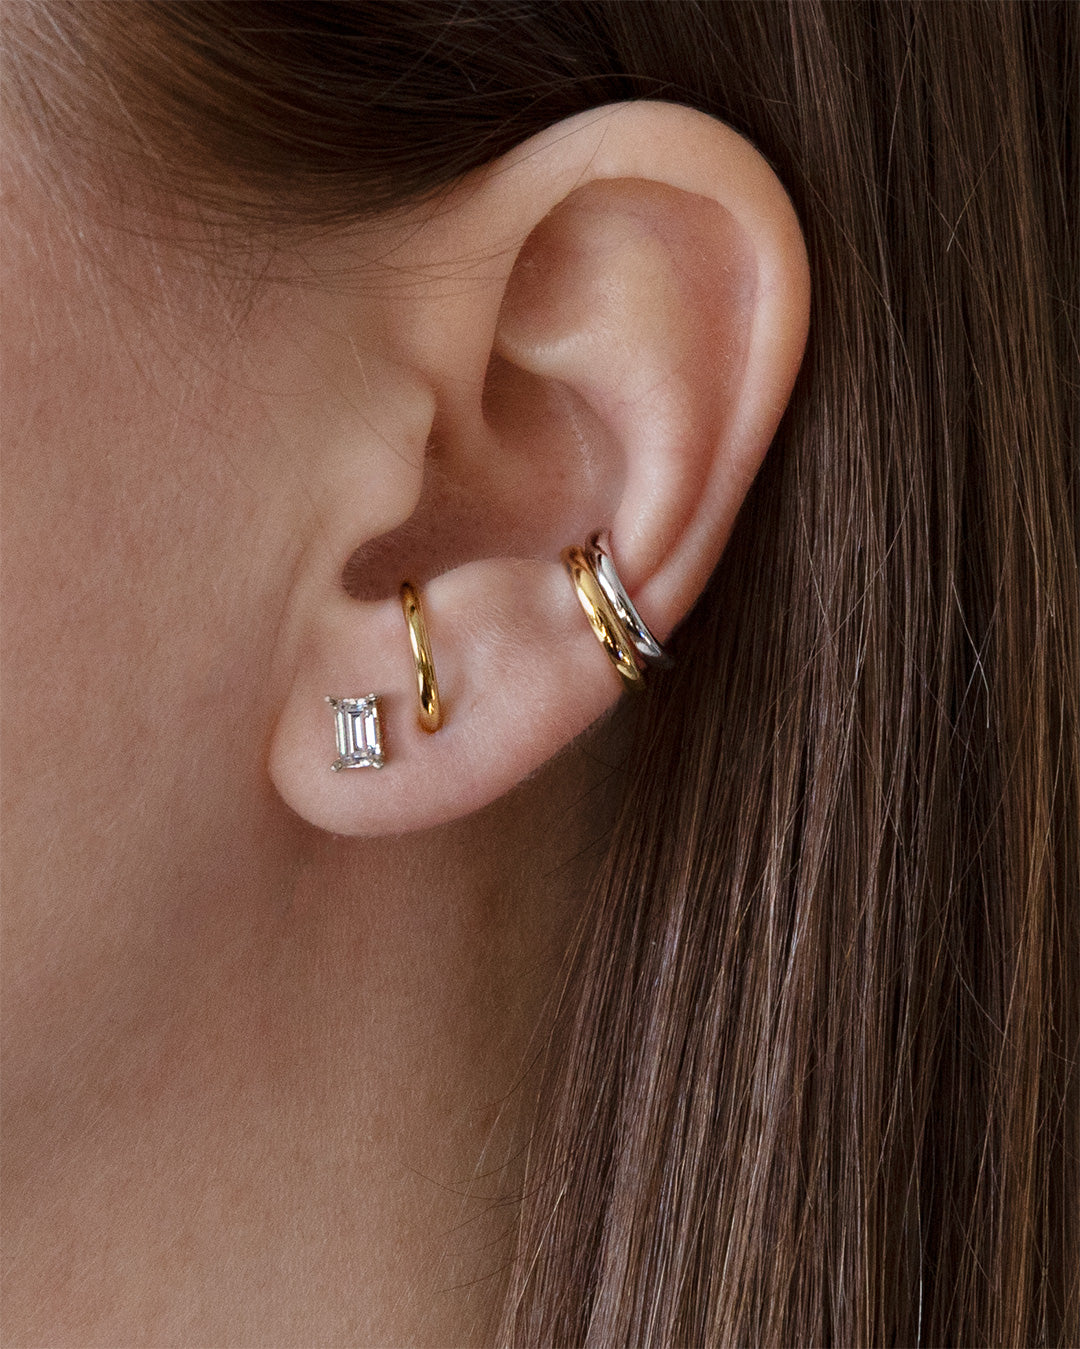 Buy Studded Ear Cuff Earrings Online. – Odette